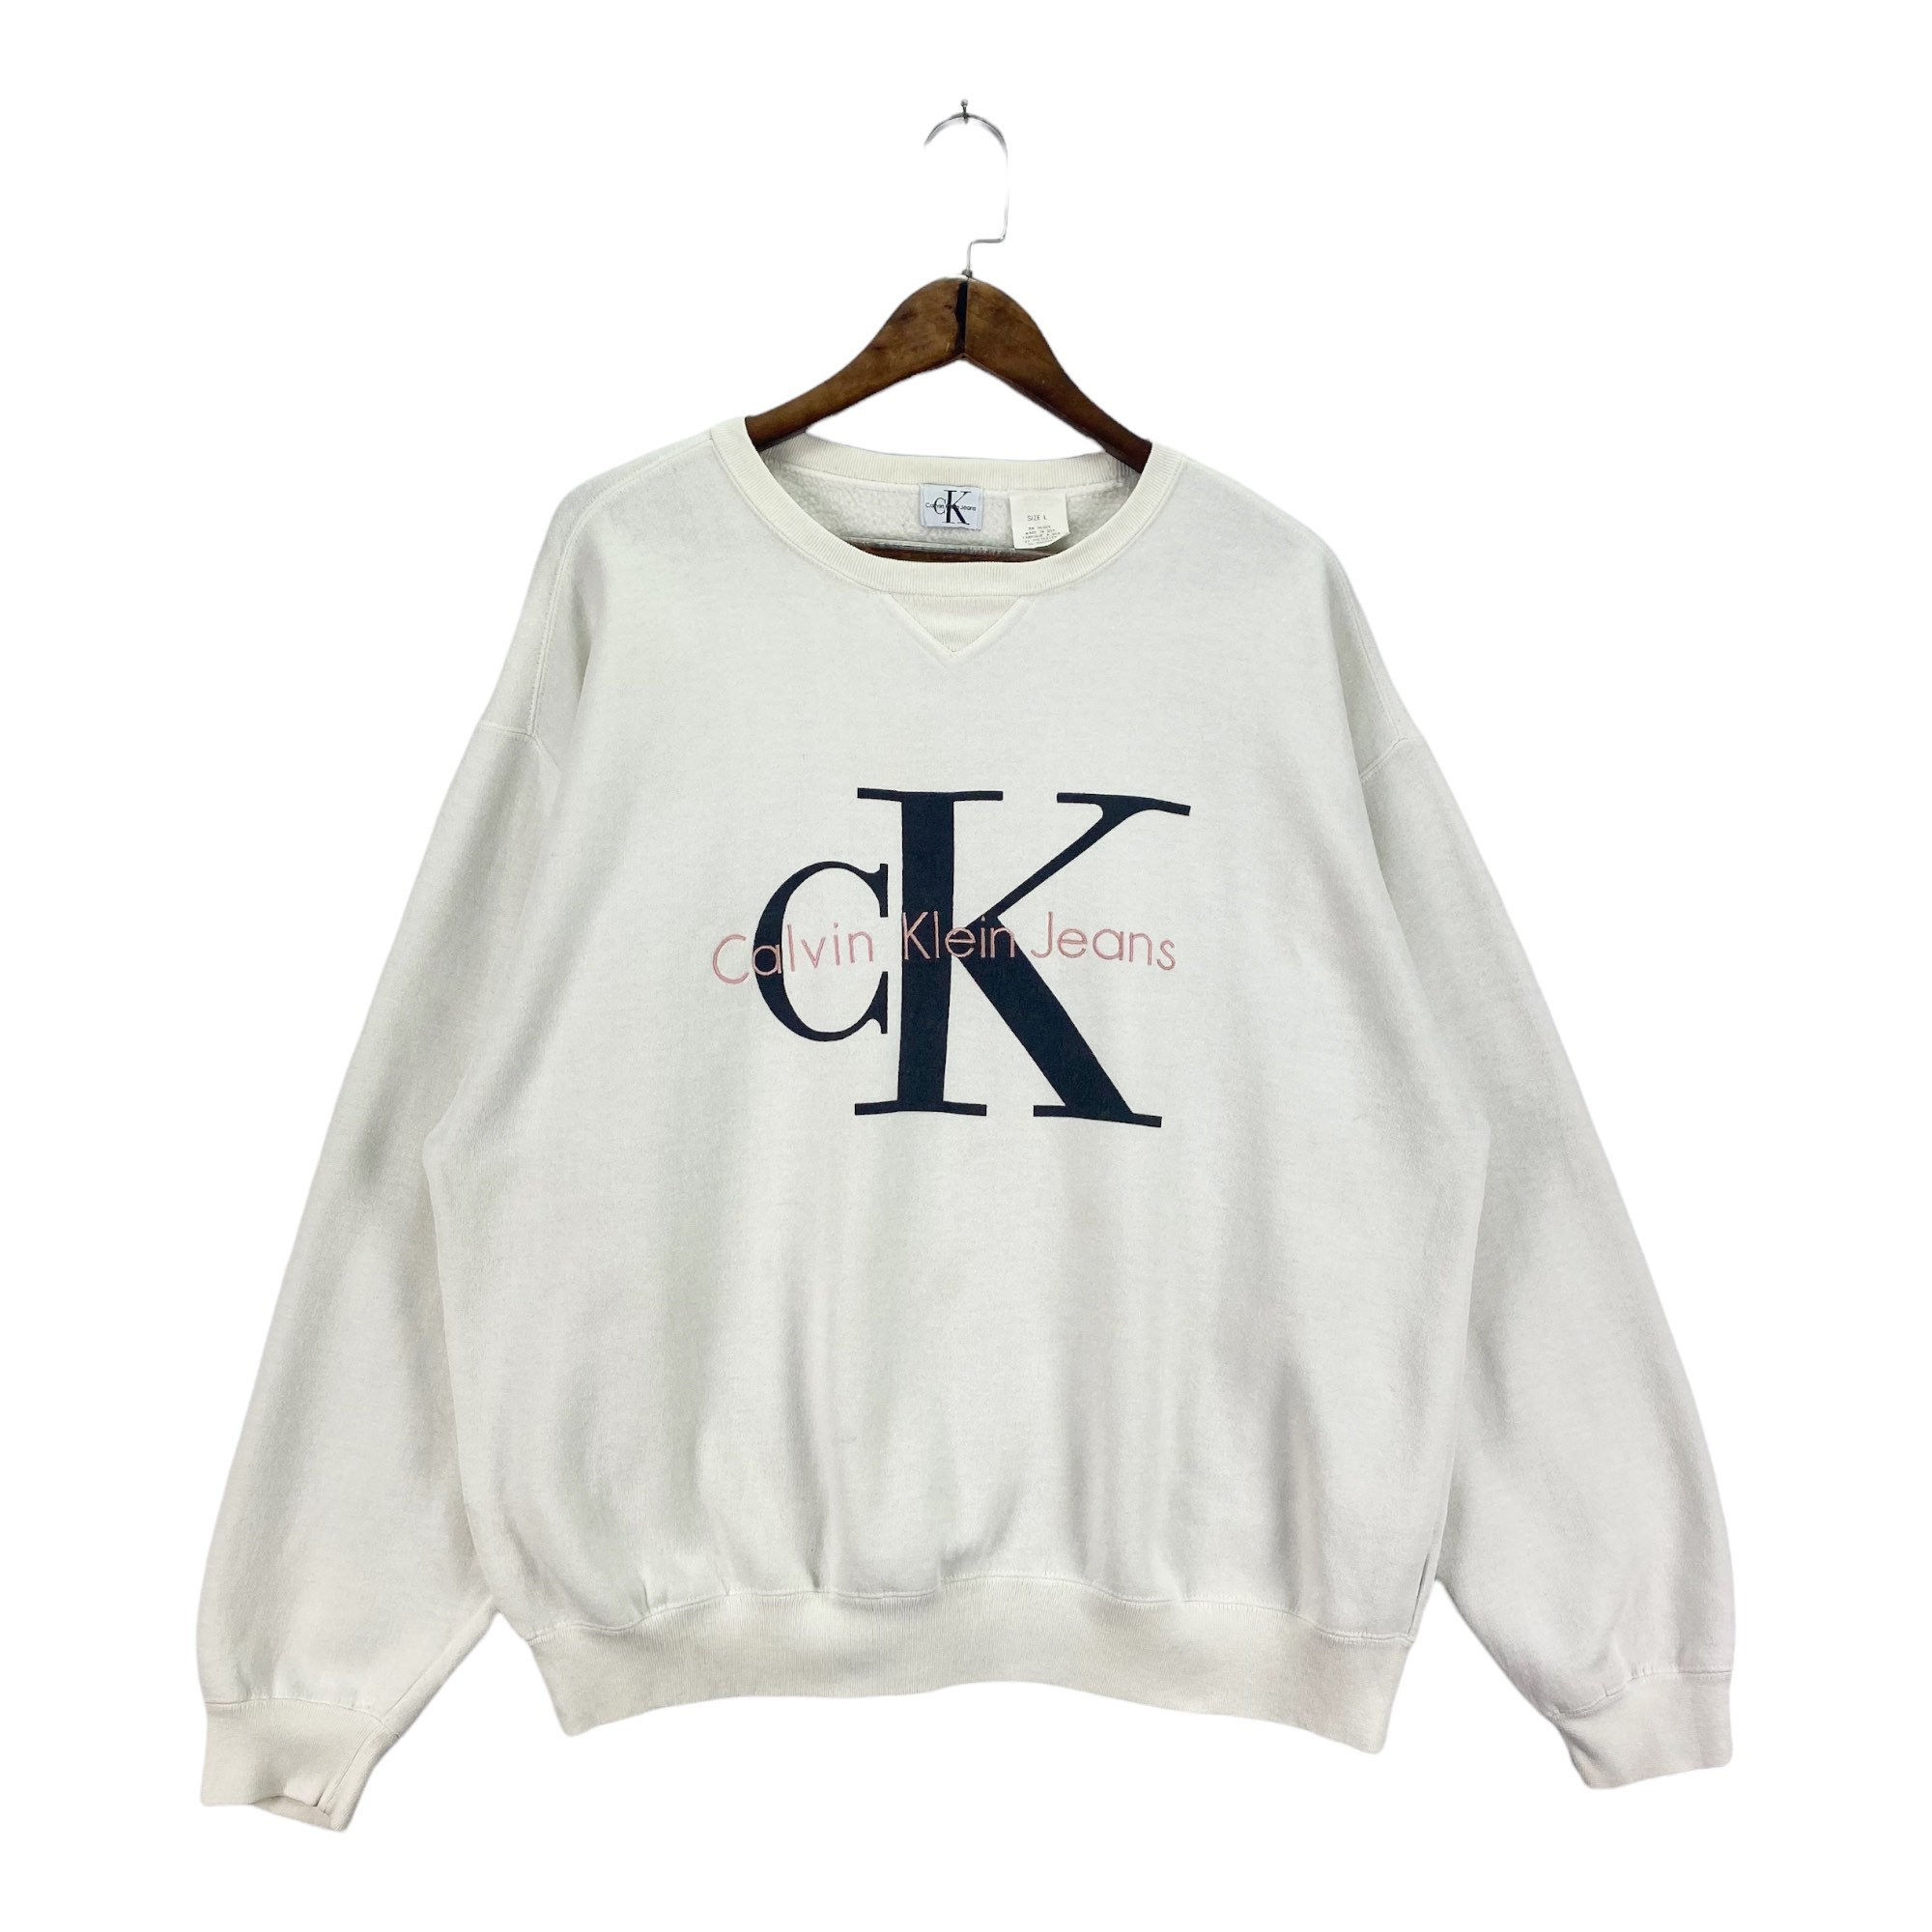 Vintage 90s Calvin Klein Crewneck Sweatshirt Made White -